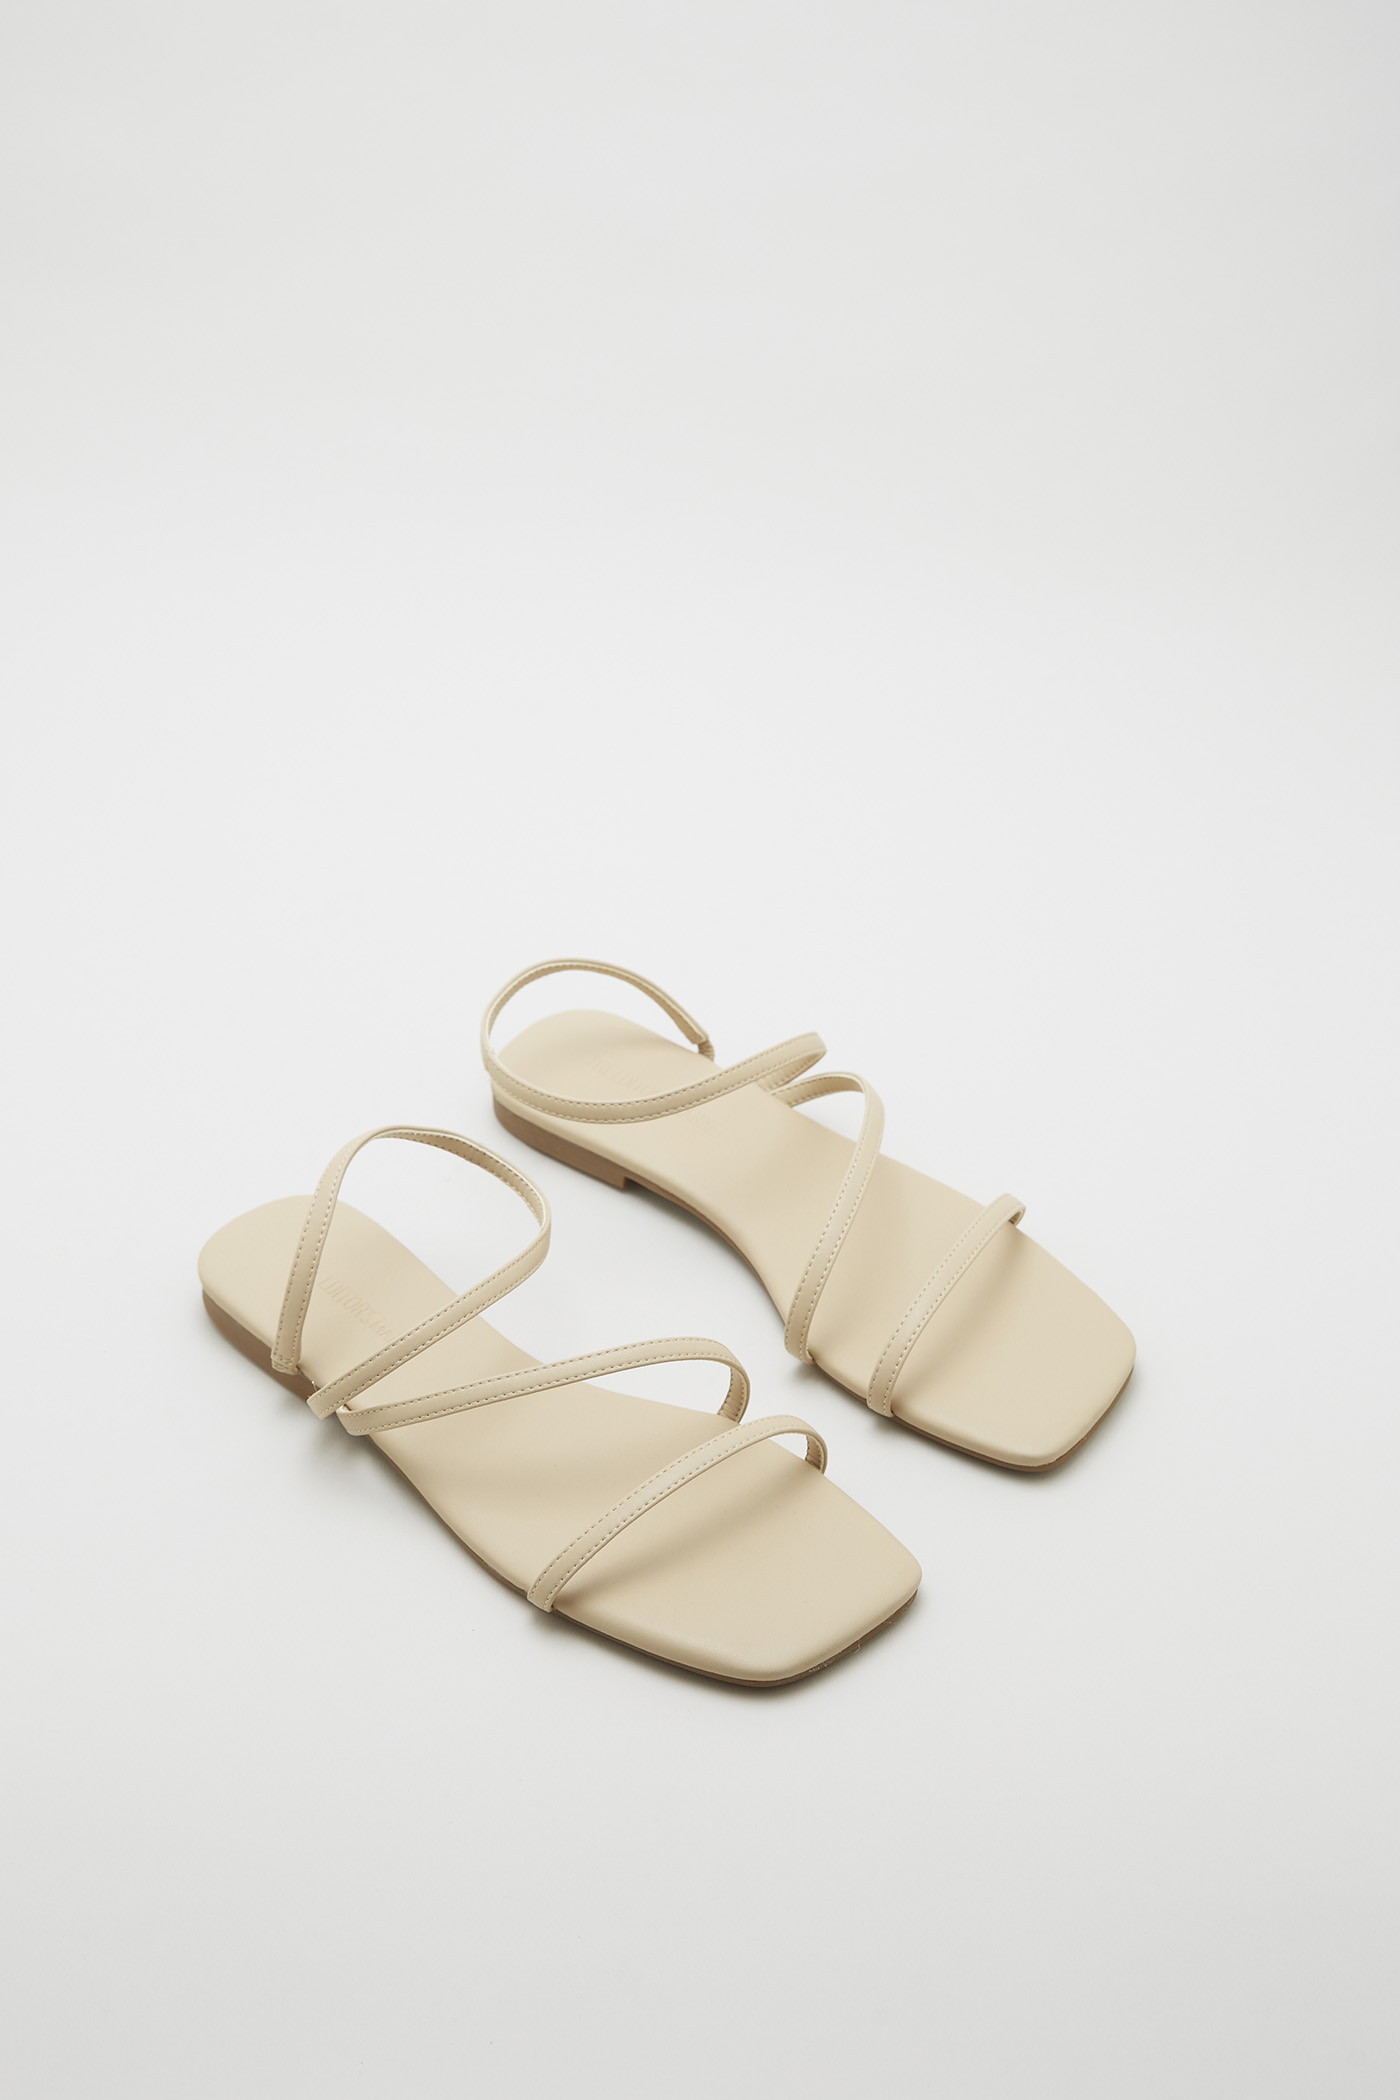 Danae Strappy Sandals